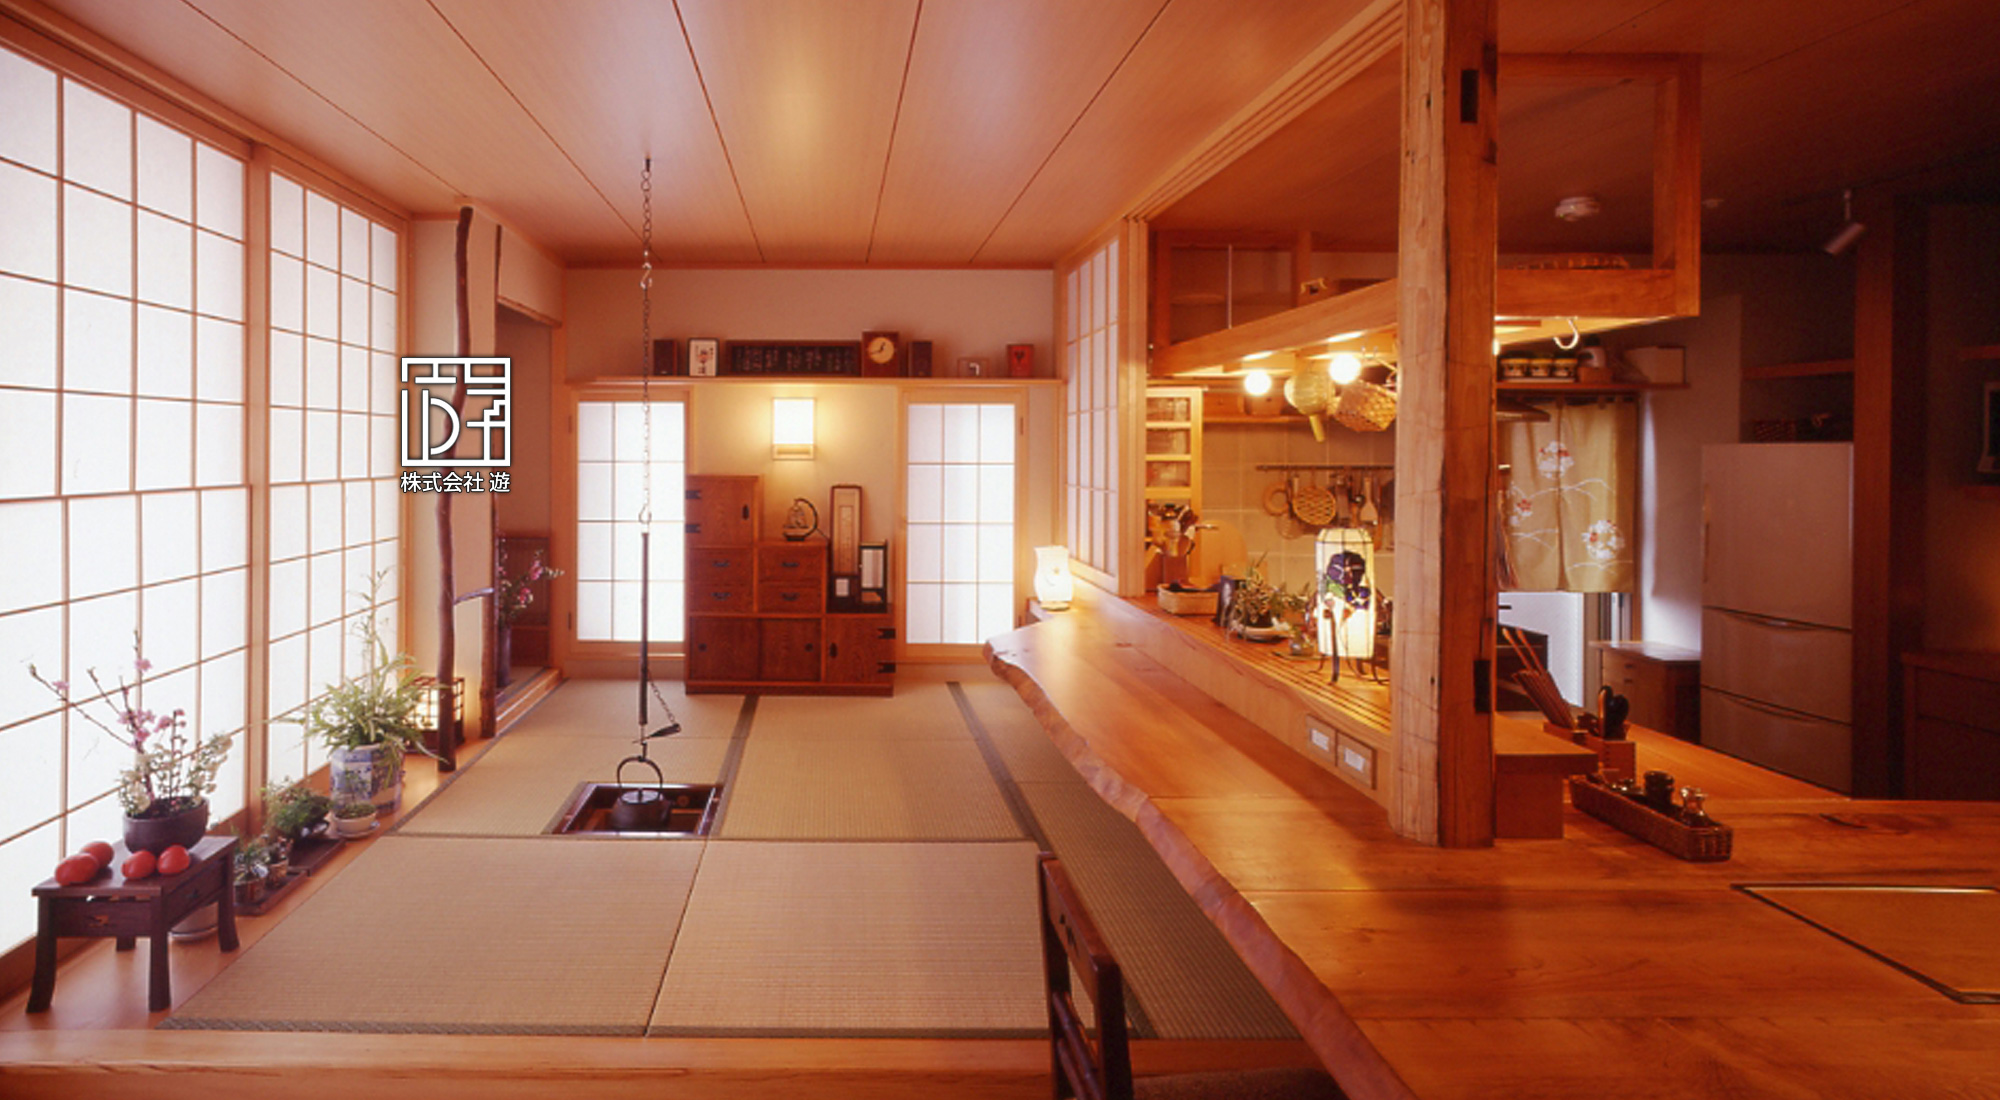 神戸市でマンションをリノベーション「居酒屋のような厨房風キッチン」